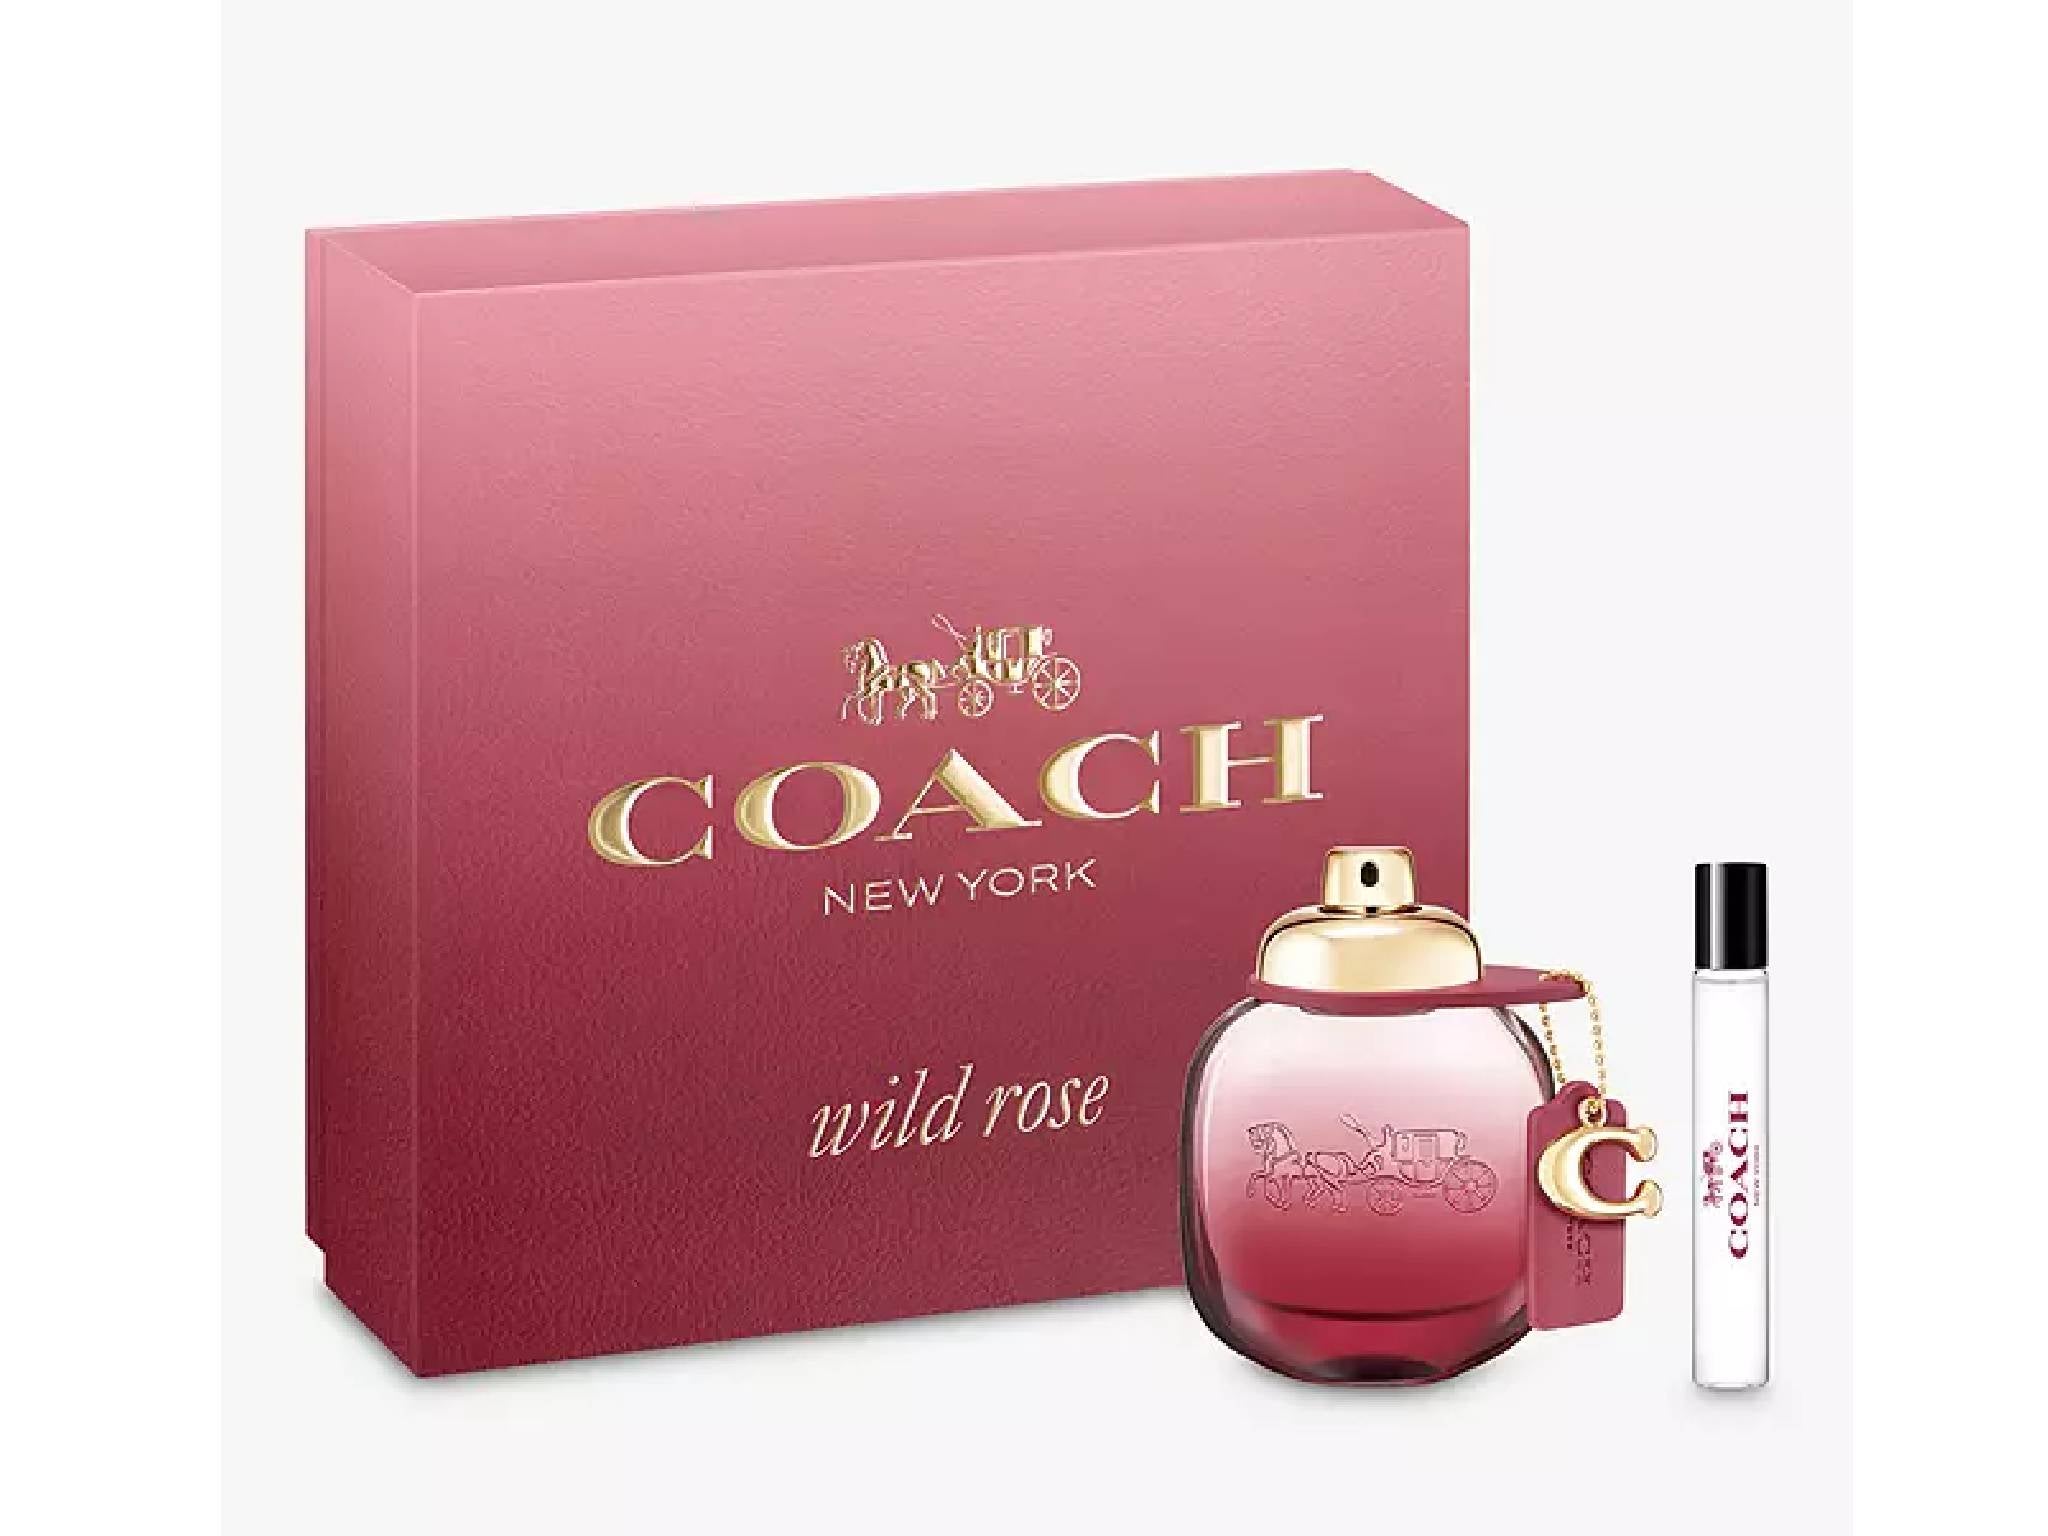 Coach wild rose eau de parfum gift set